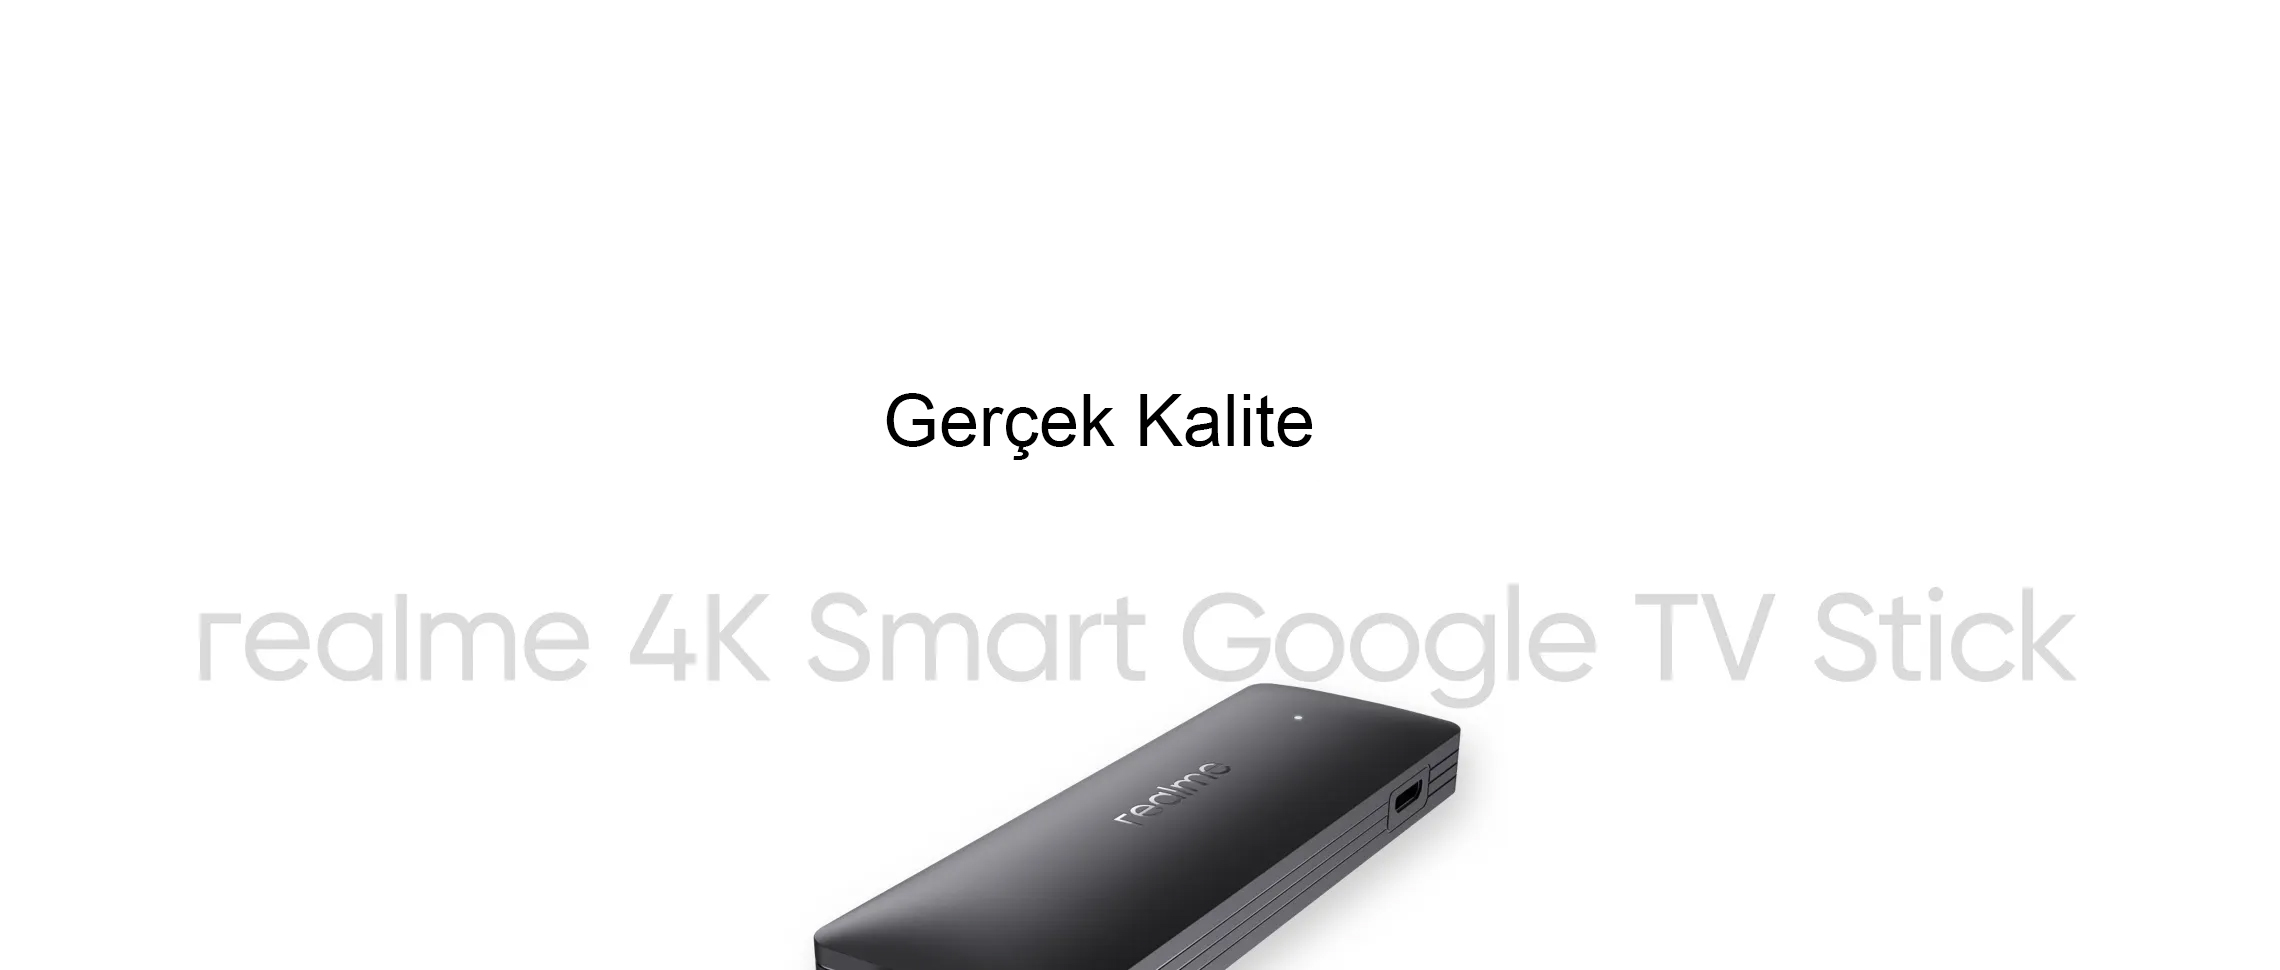 Gerçek 4K Kalitesi  Realme 4K Akıllı Google TV Stick ile yüksek çözünürlük ve kalite ile daha net ve kaliteli görüntüler sunar. İzleme keyfinizi 4K yaşamanızı sağlar.